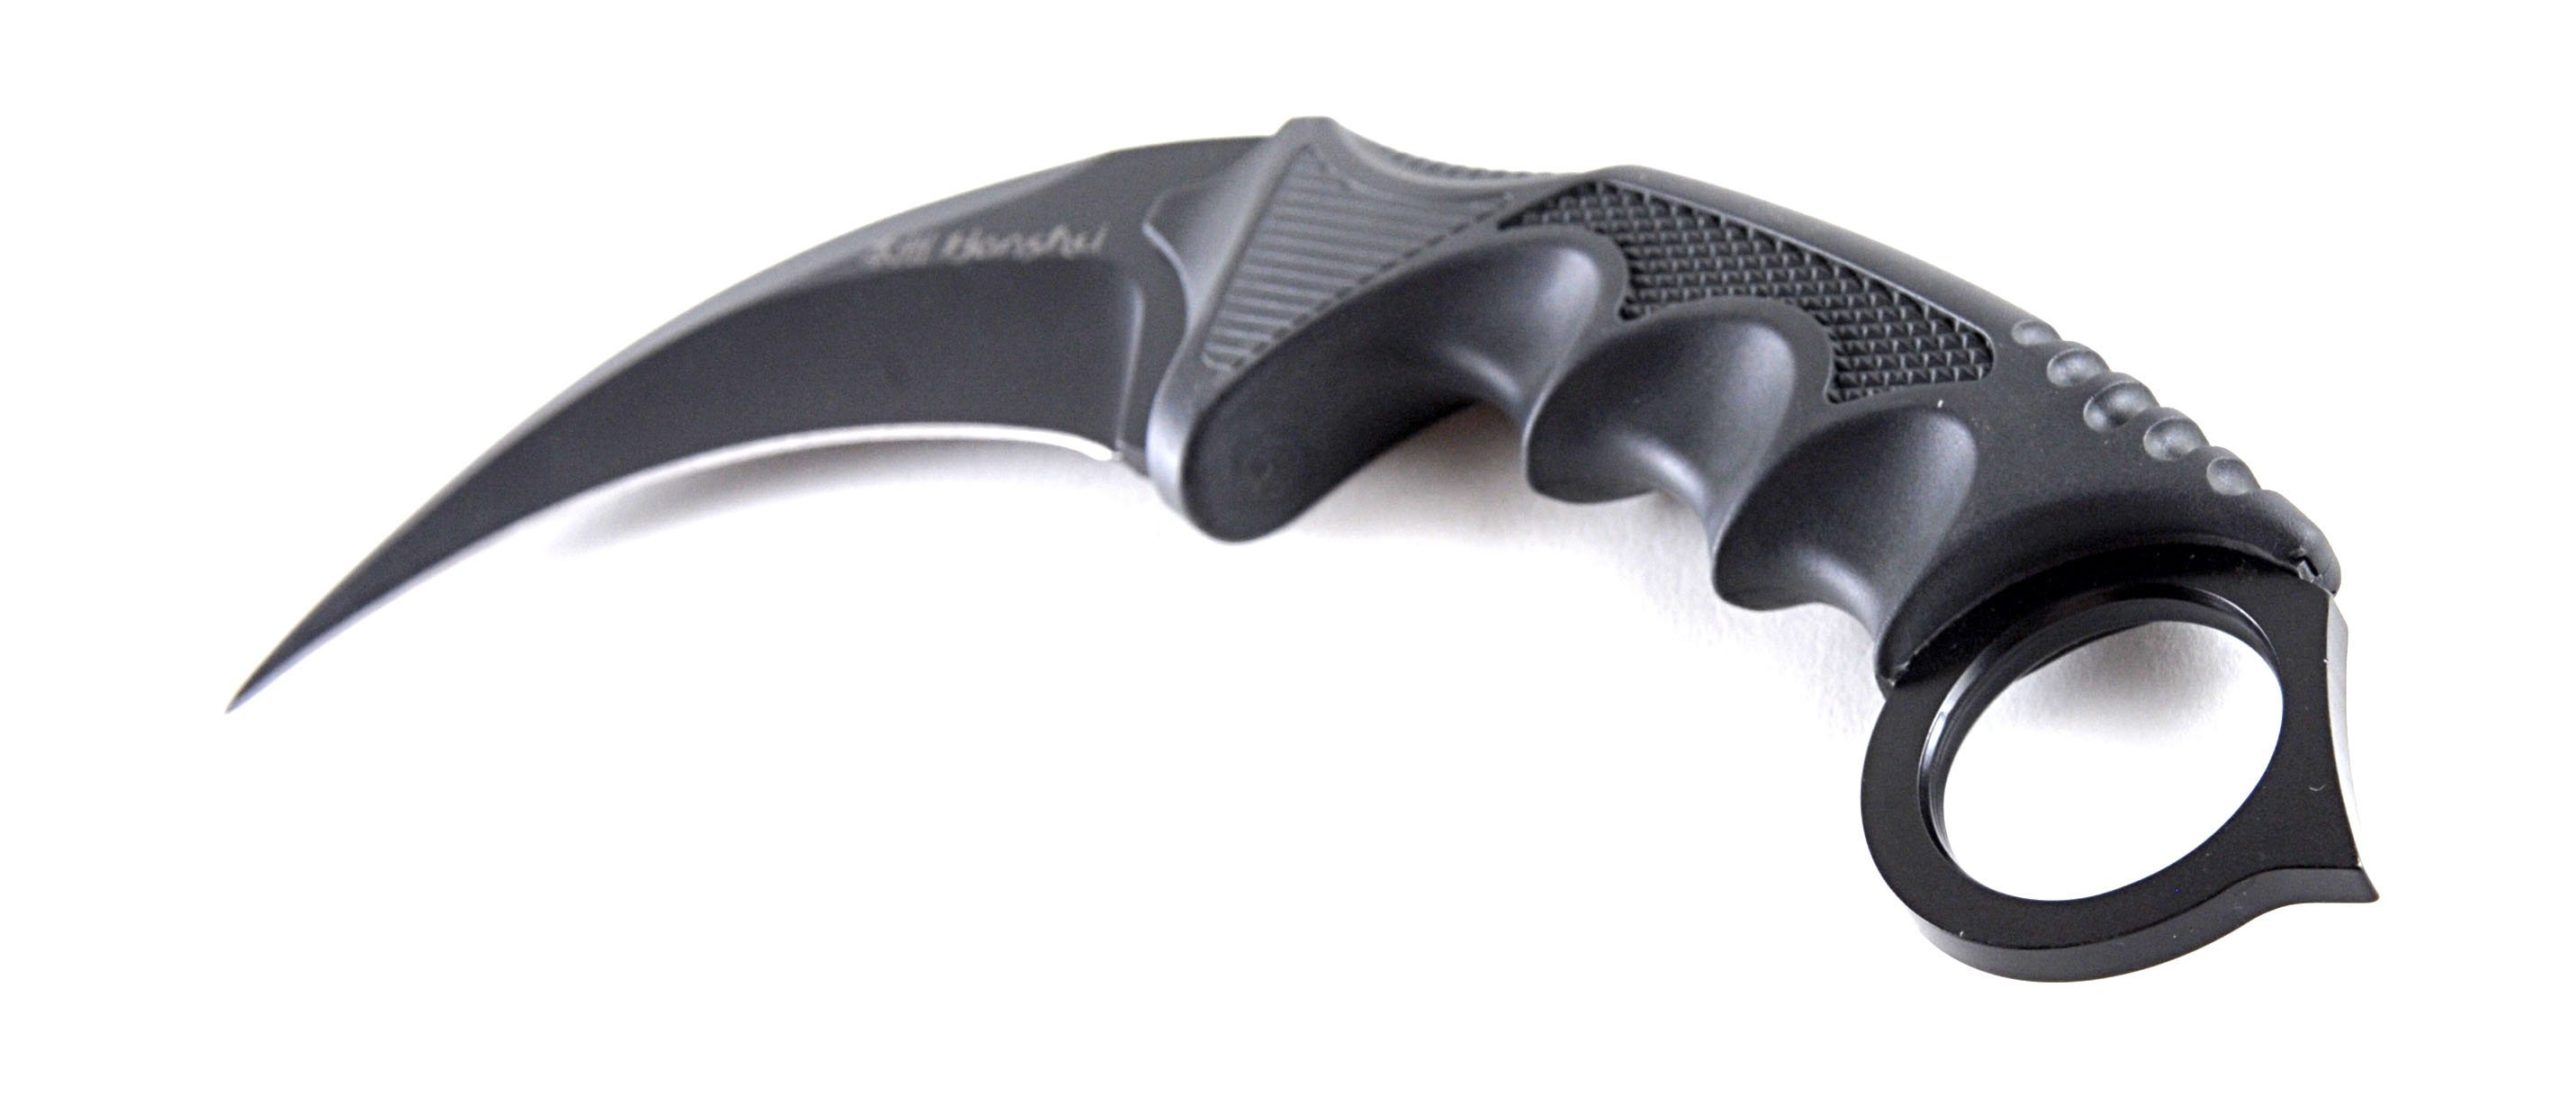 UNITED CUTLERY HONSHU KARAMBIT KNIFE BLACK W/ SHOULDER SHEATH - Gun Gear